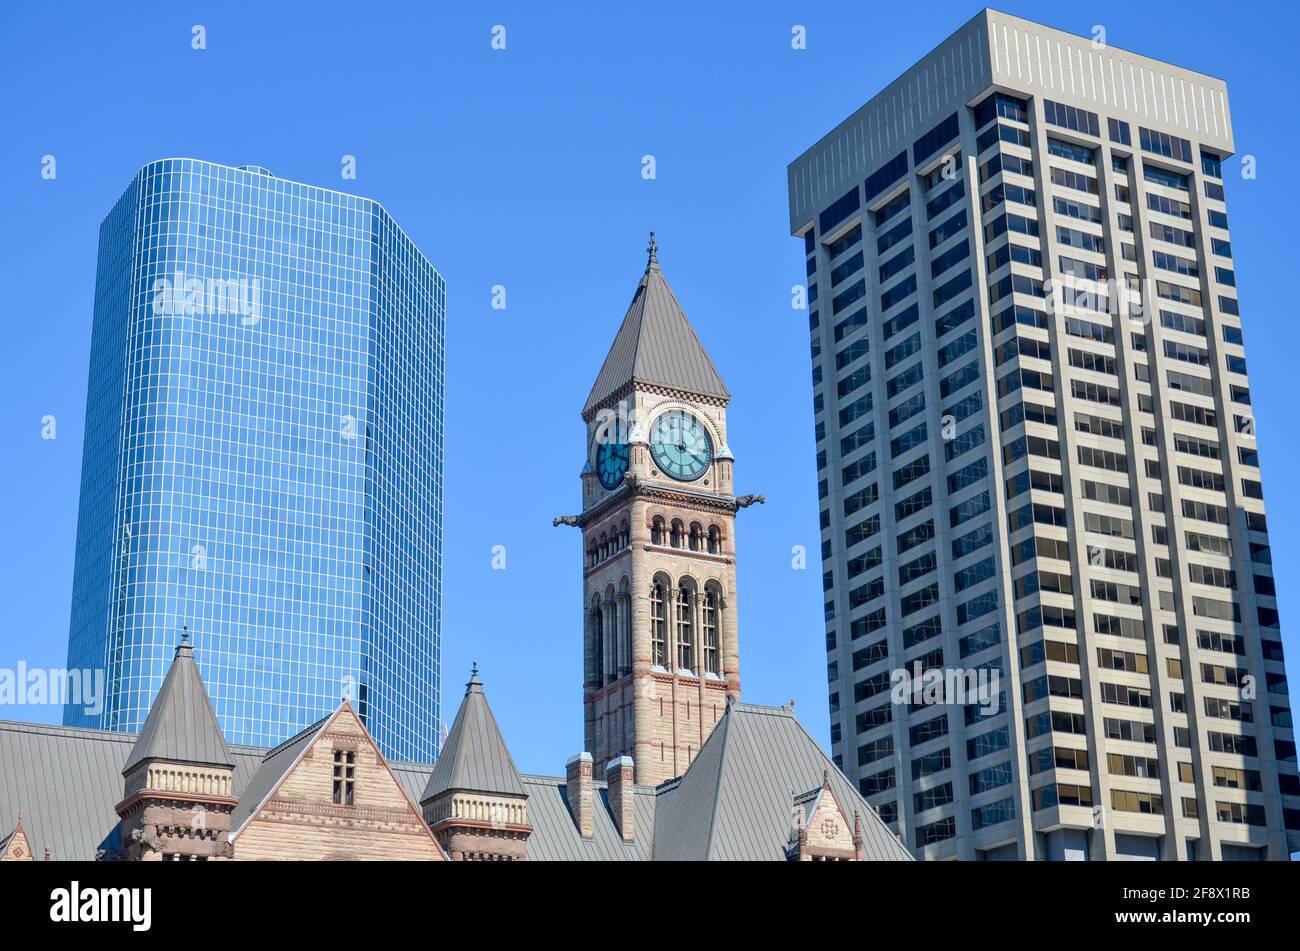 Antigua iglesia con el reloj de la torre de la iglesia entre algunos edificios de oficinas En el centro de Toronto bajo un soleado cielo azul Foto de stock